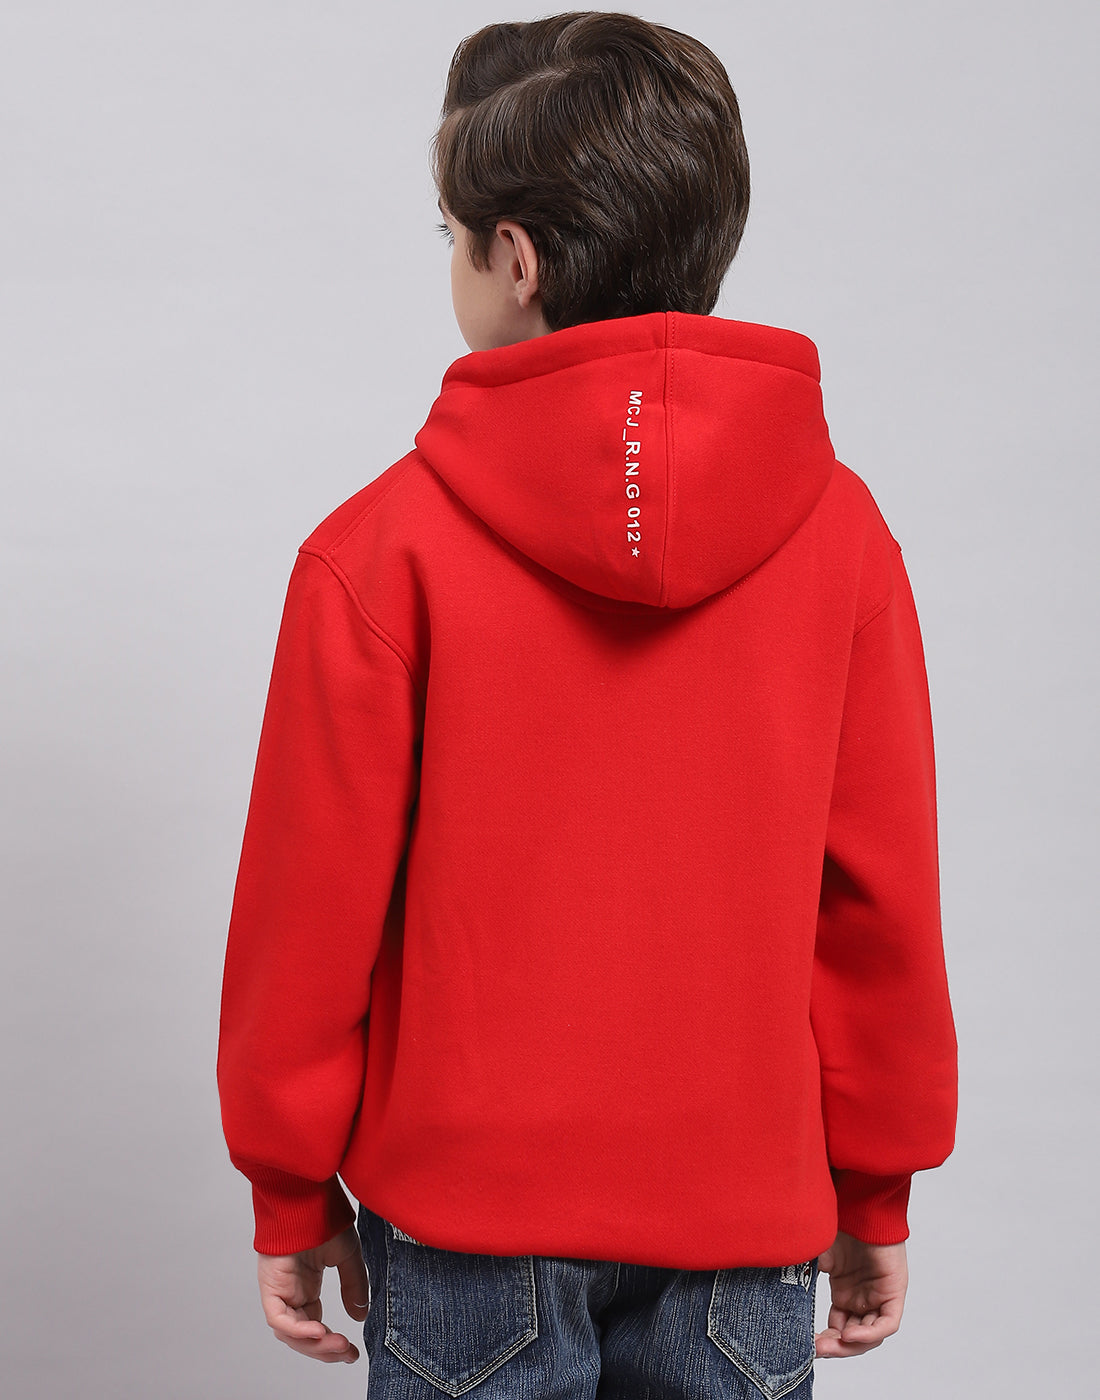 Boys Red Printed Hooded Full Sleeve Sweatshirt